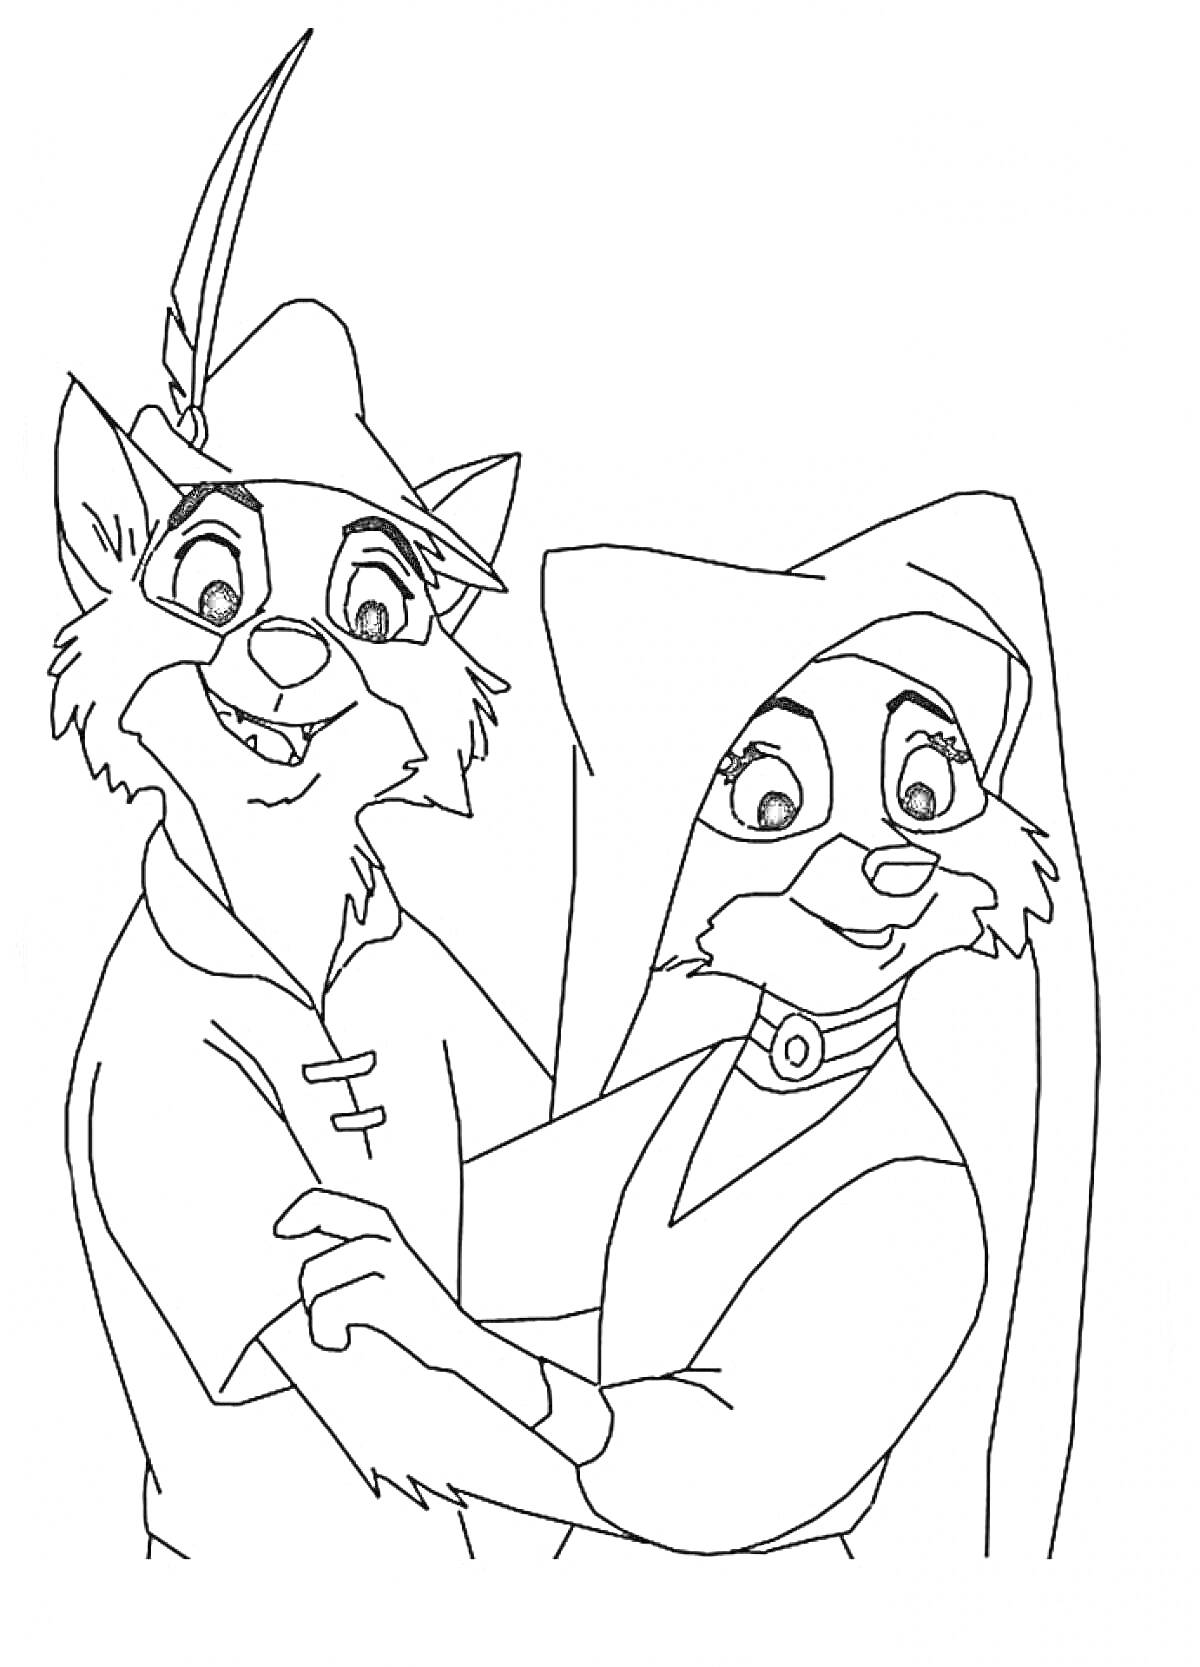 Два антропоморфных персонажа из мультфильма, один в шляпе с пером, второй - в головном уборе и платье.